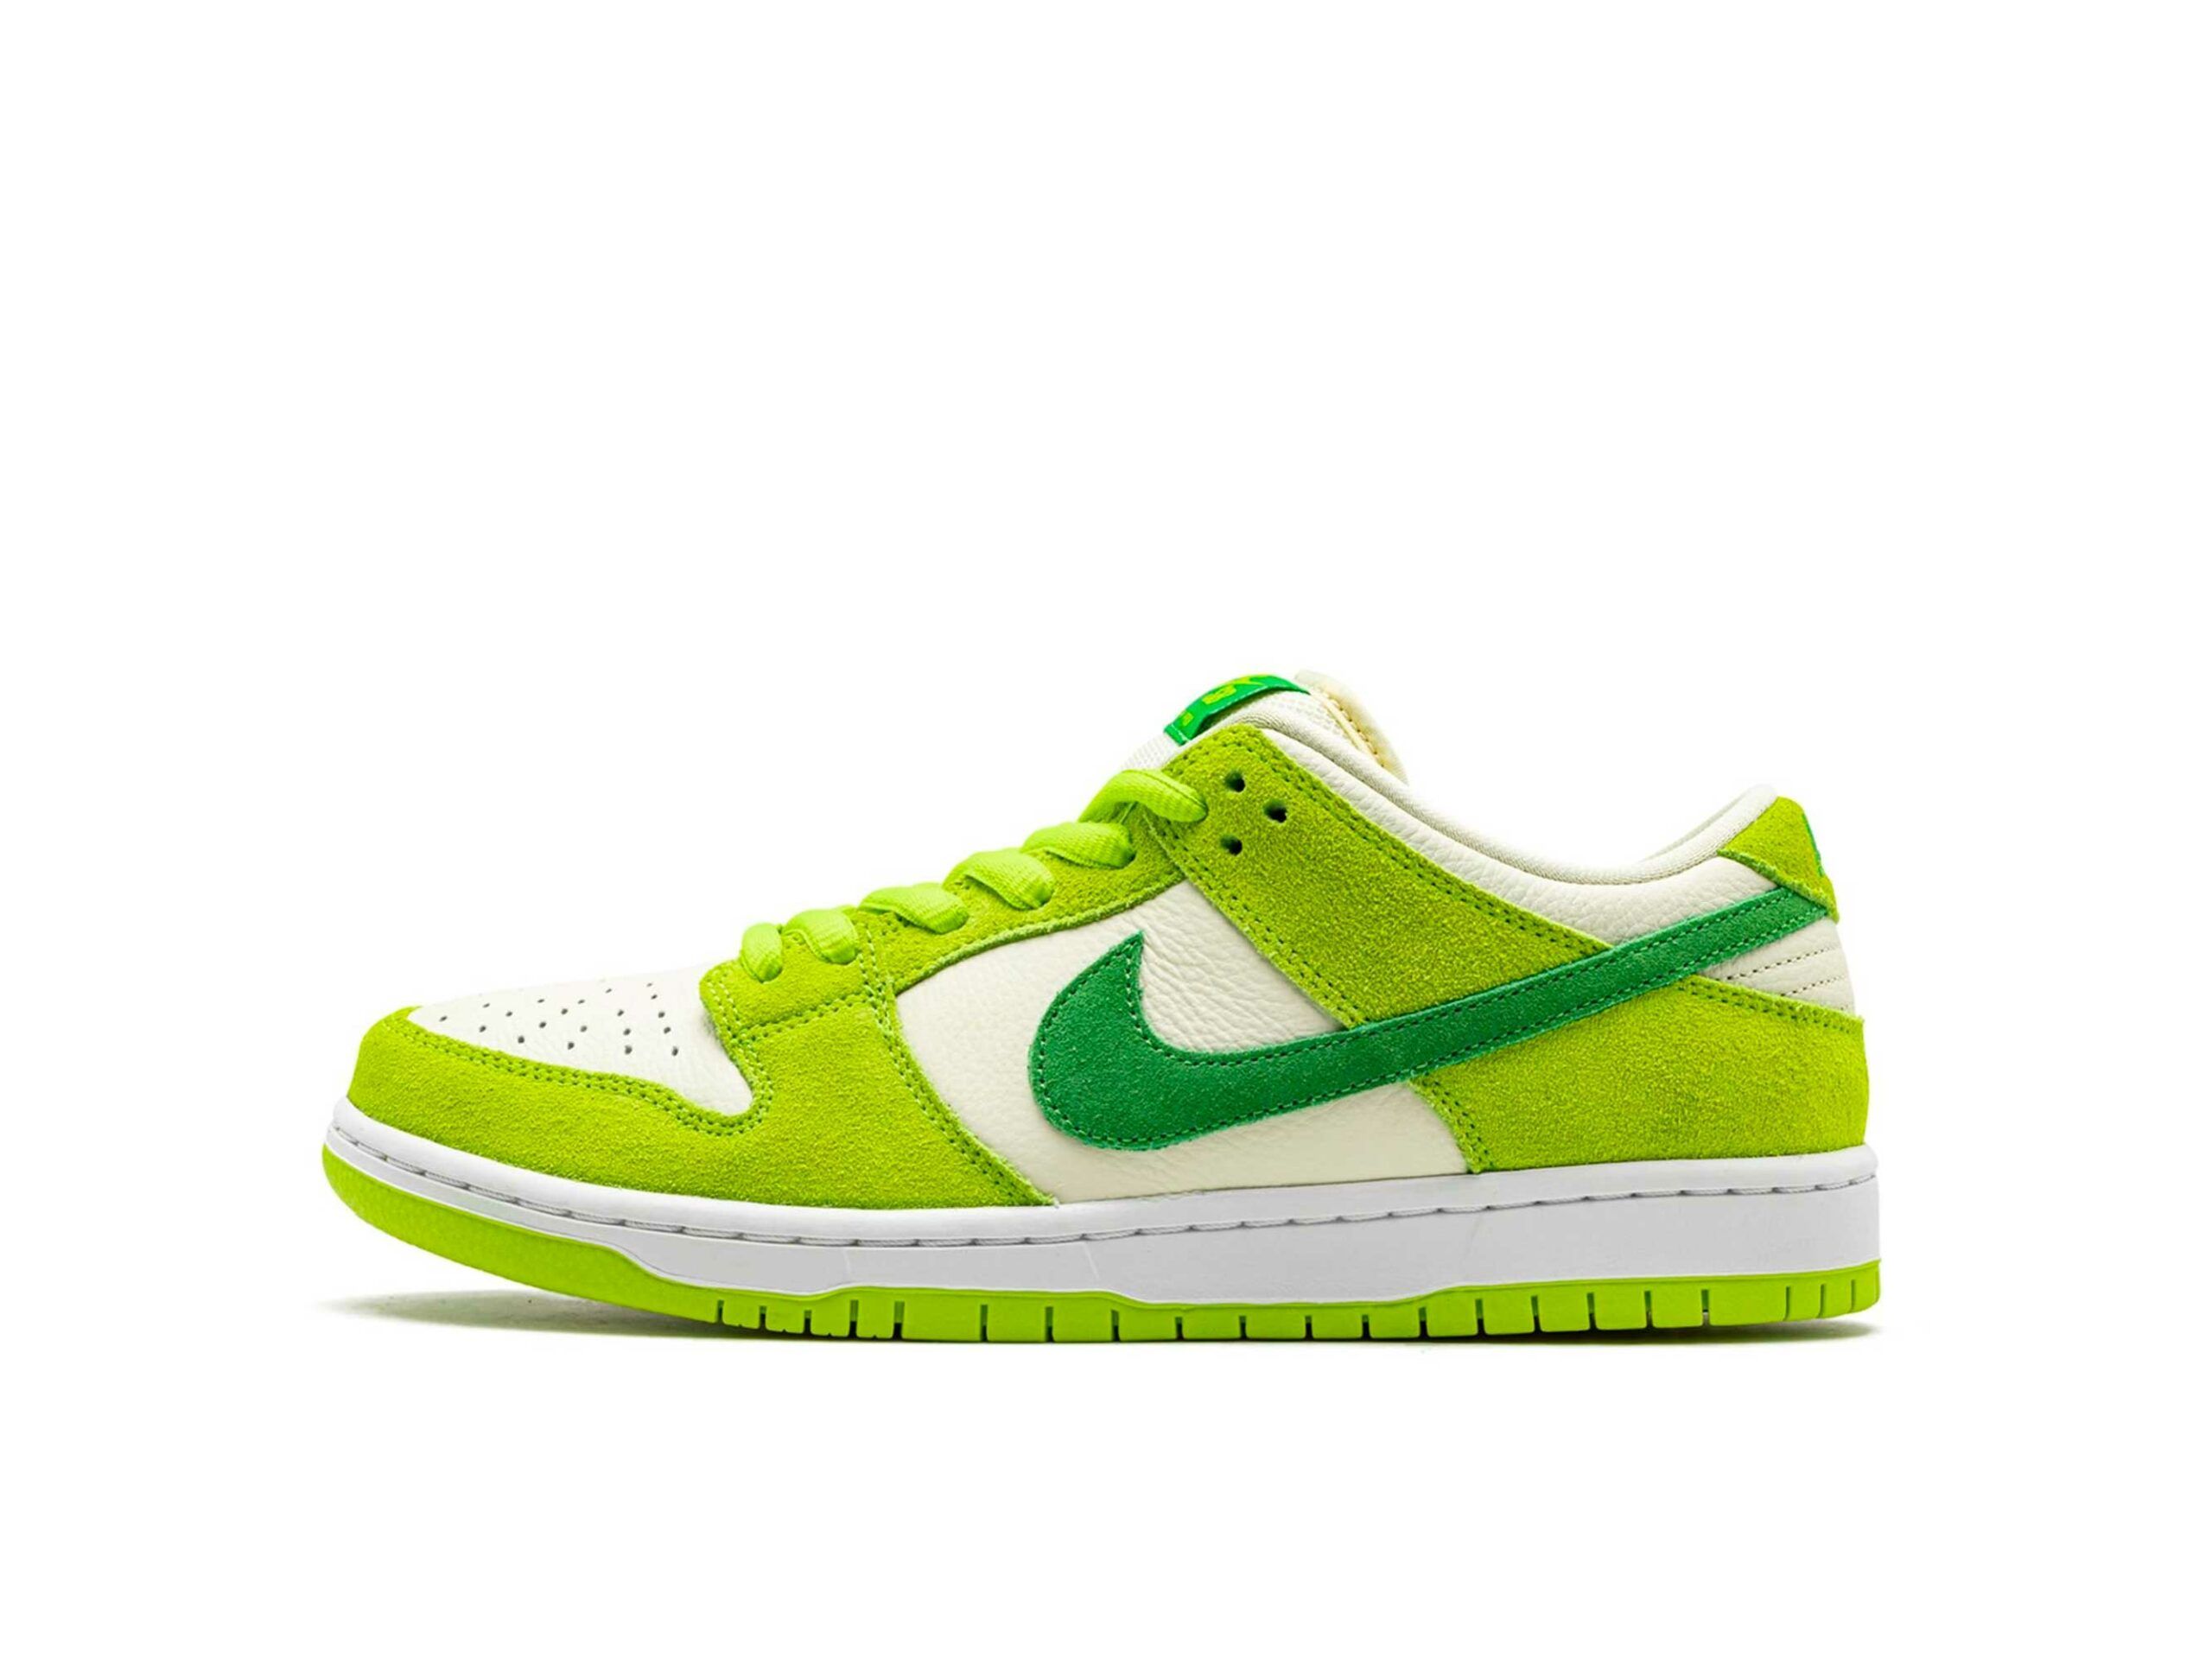 Кроссовки найк low. Nike SB Dunk Low Green. Nike SB Dunk Low Green Apple. Кроссовки Nike SB Dunk Low Green Apple. Nike Dunk Low Pro Green.